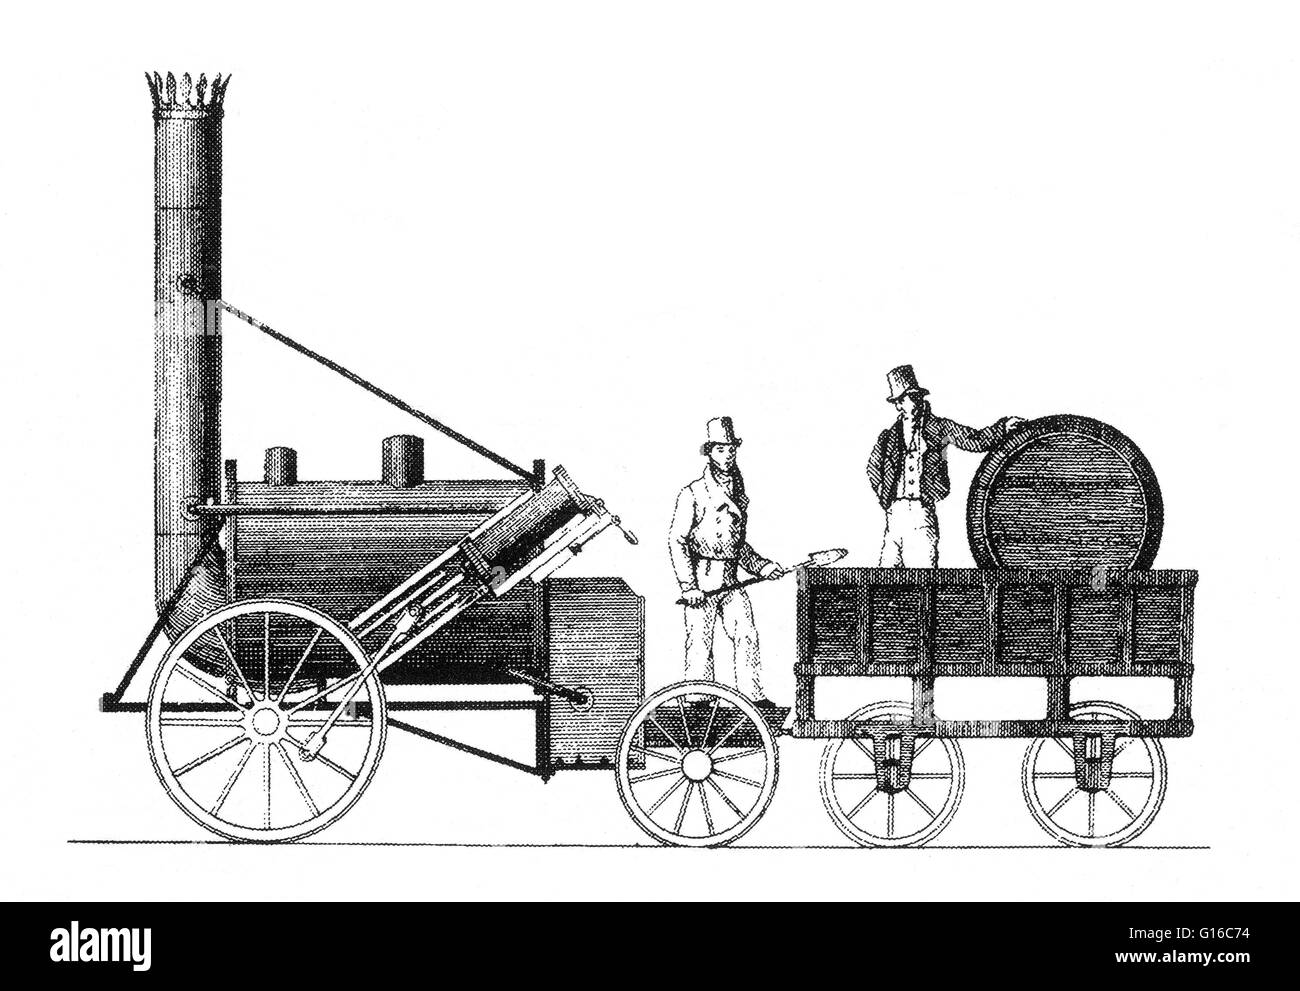 Stephenson's Rocket a été l'un des premiers de la locomotive à vapeur 0-2-2 arrangement roue, construit en 1829 à la suite des travaux de la rue Robert Stephenson and Company à Newcastle upon Tyne. Il a été construit pour, et a gagné, les essais de Freckeisen détenus par le Liverpool & Anna v - Tigresse tropicale Banque D'Images